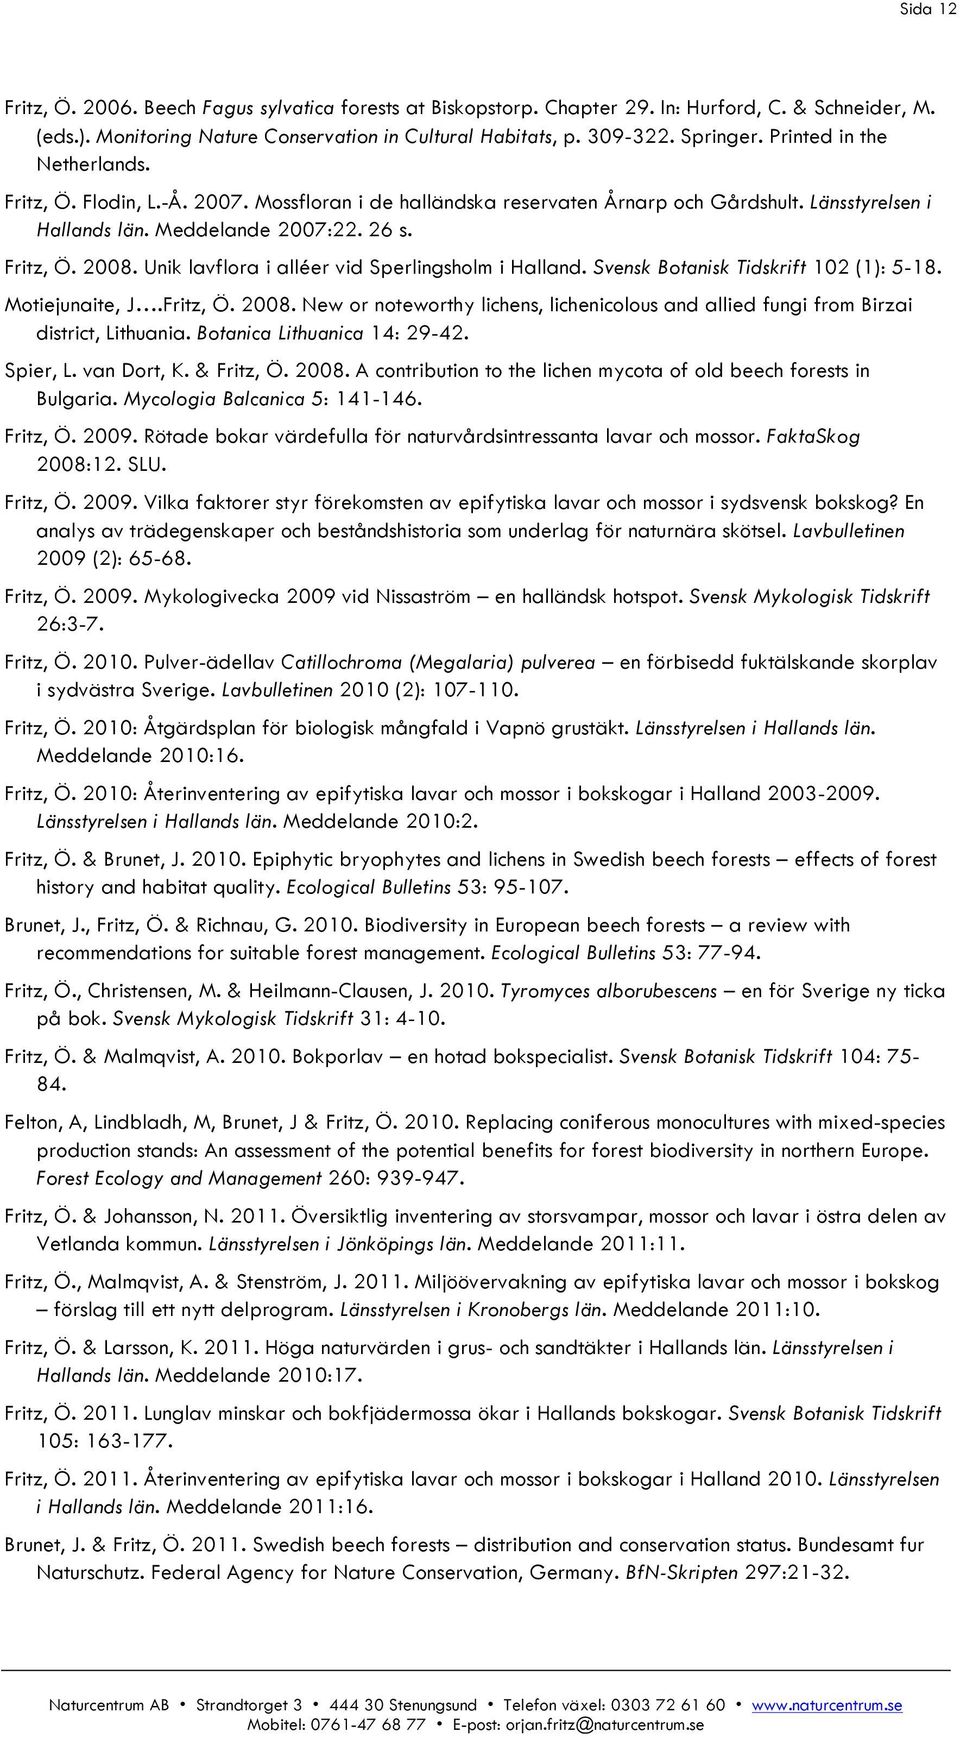 Unik lavflora i alléer vid Sperlingsholm i Halland. Svensk Botanisk Tidskrift 102 (1): 5-18. Motiejunaite, J.Fritz, Ö. 2008.